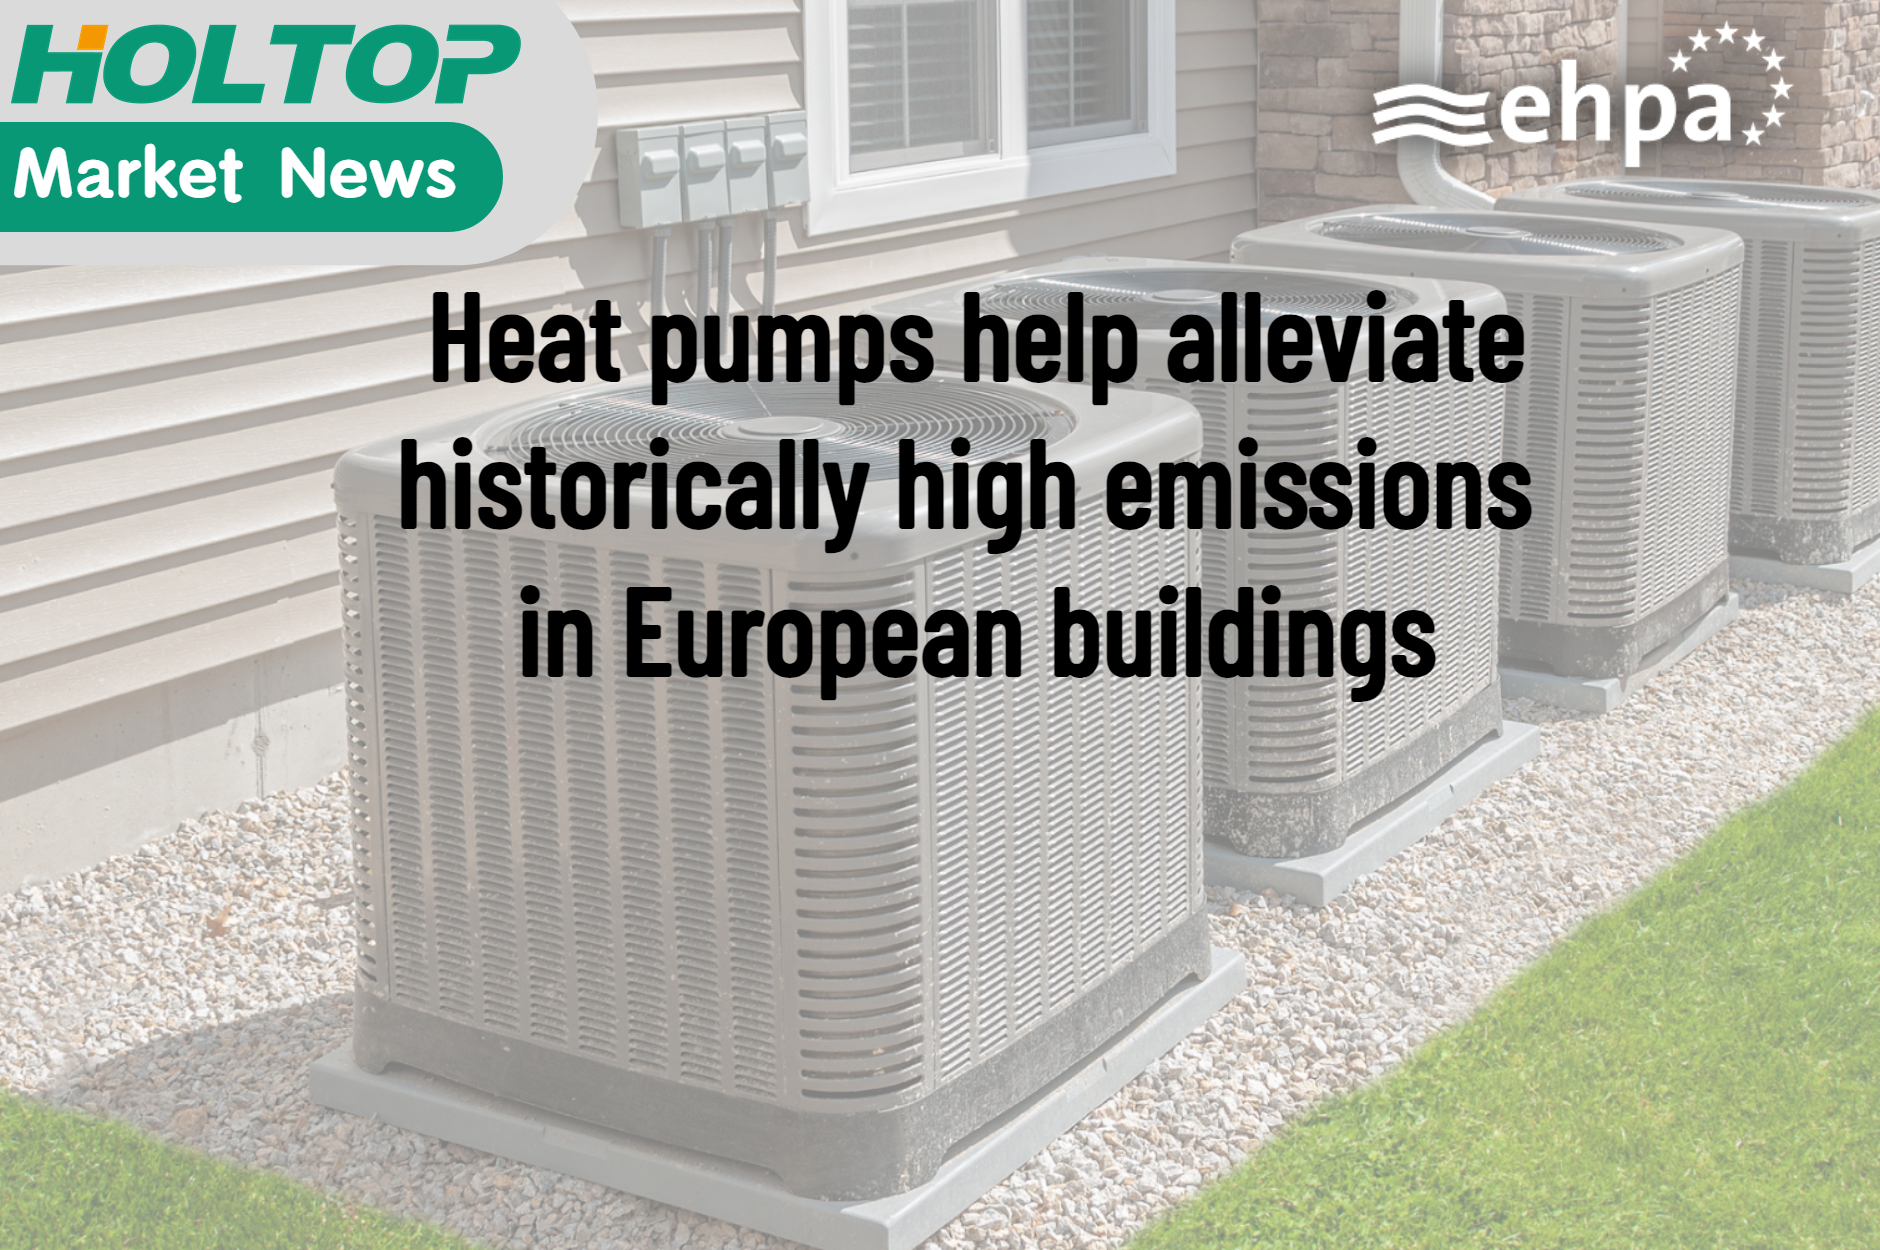 Le pompe di calore aiutano ad alleviare le emissioni storicamente elevate negli edifici europei